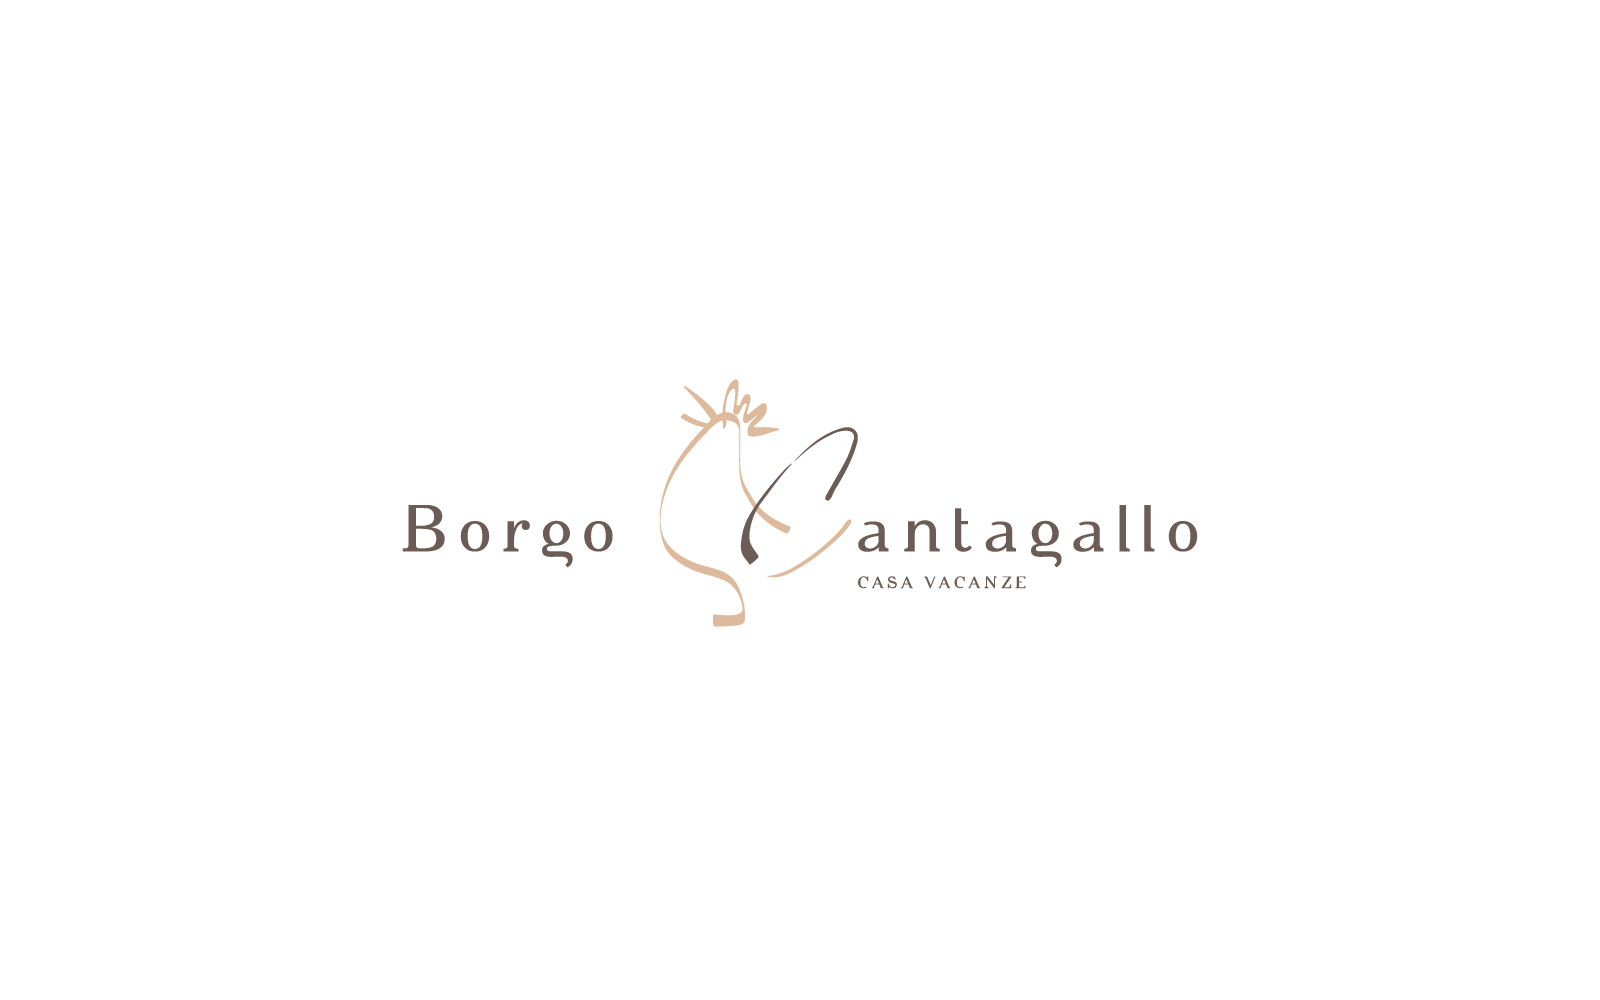 progetto grafico del logo per il b&B Borgo Cantagallo, creato dallo studio grafico Diade